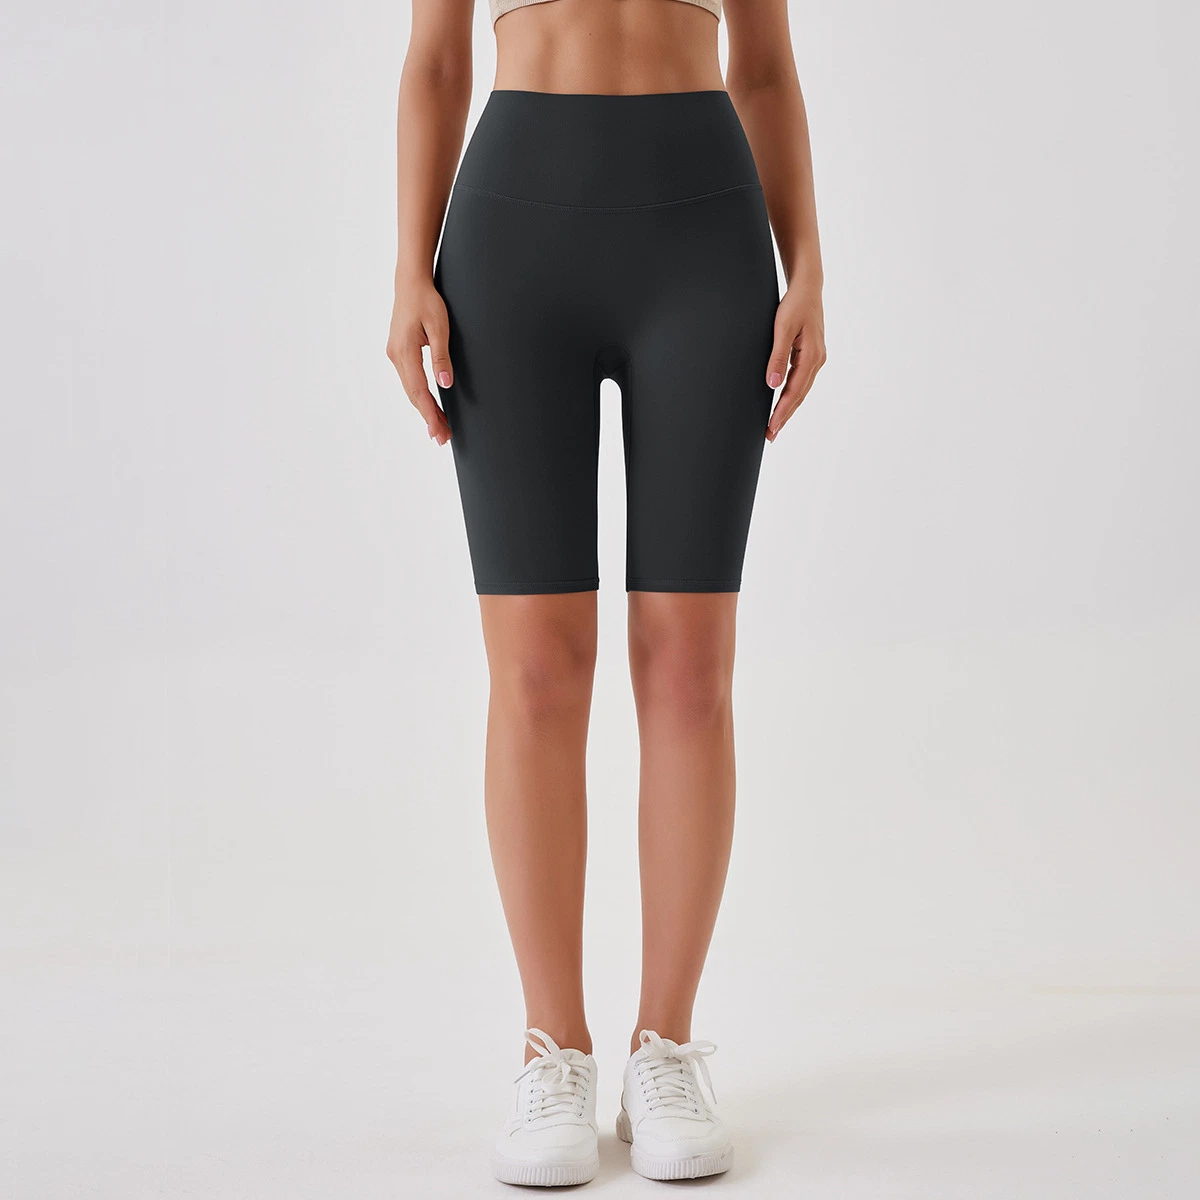 Boas vendas sob medida tecido macio e respirável nylon Sports Fitness High Leggings com calções de treino para mulher com calções de ioga na cintura